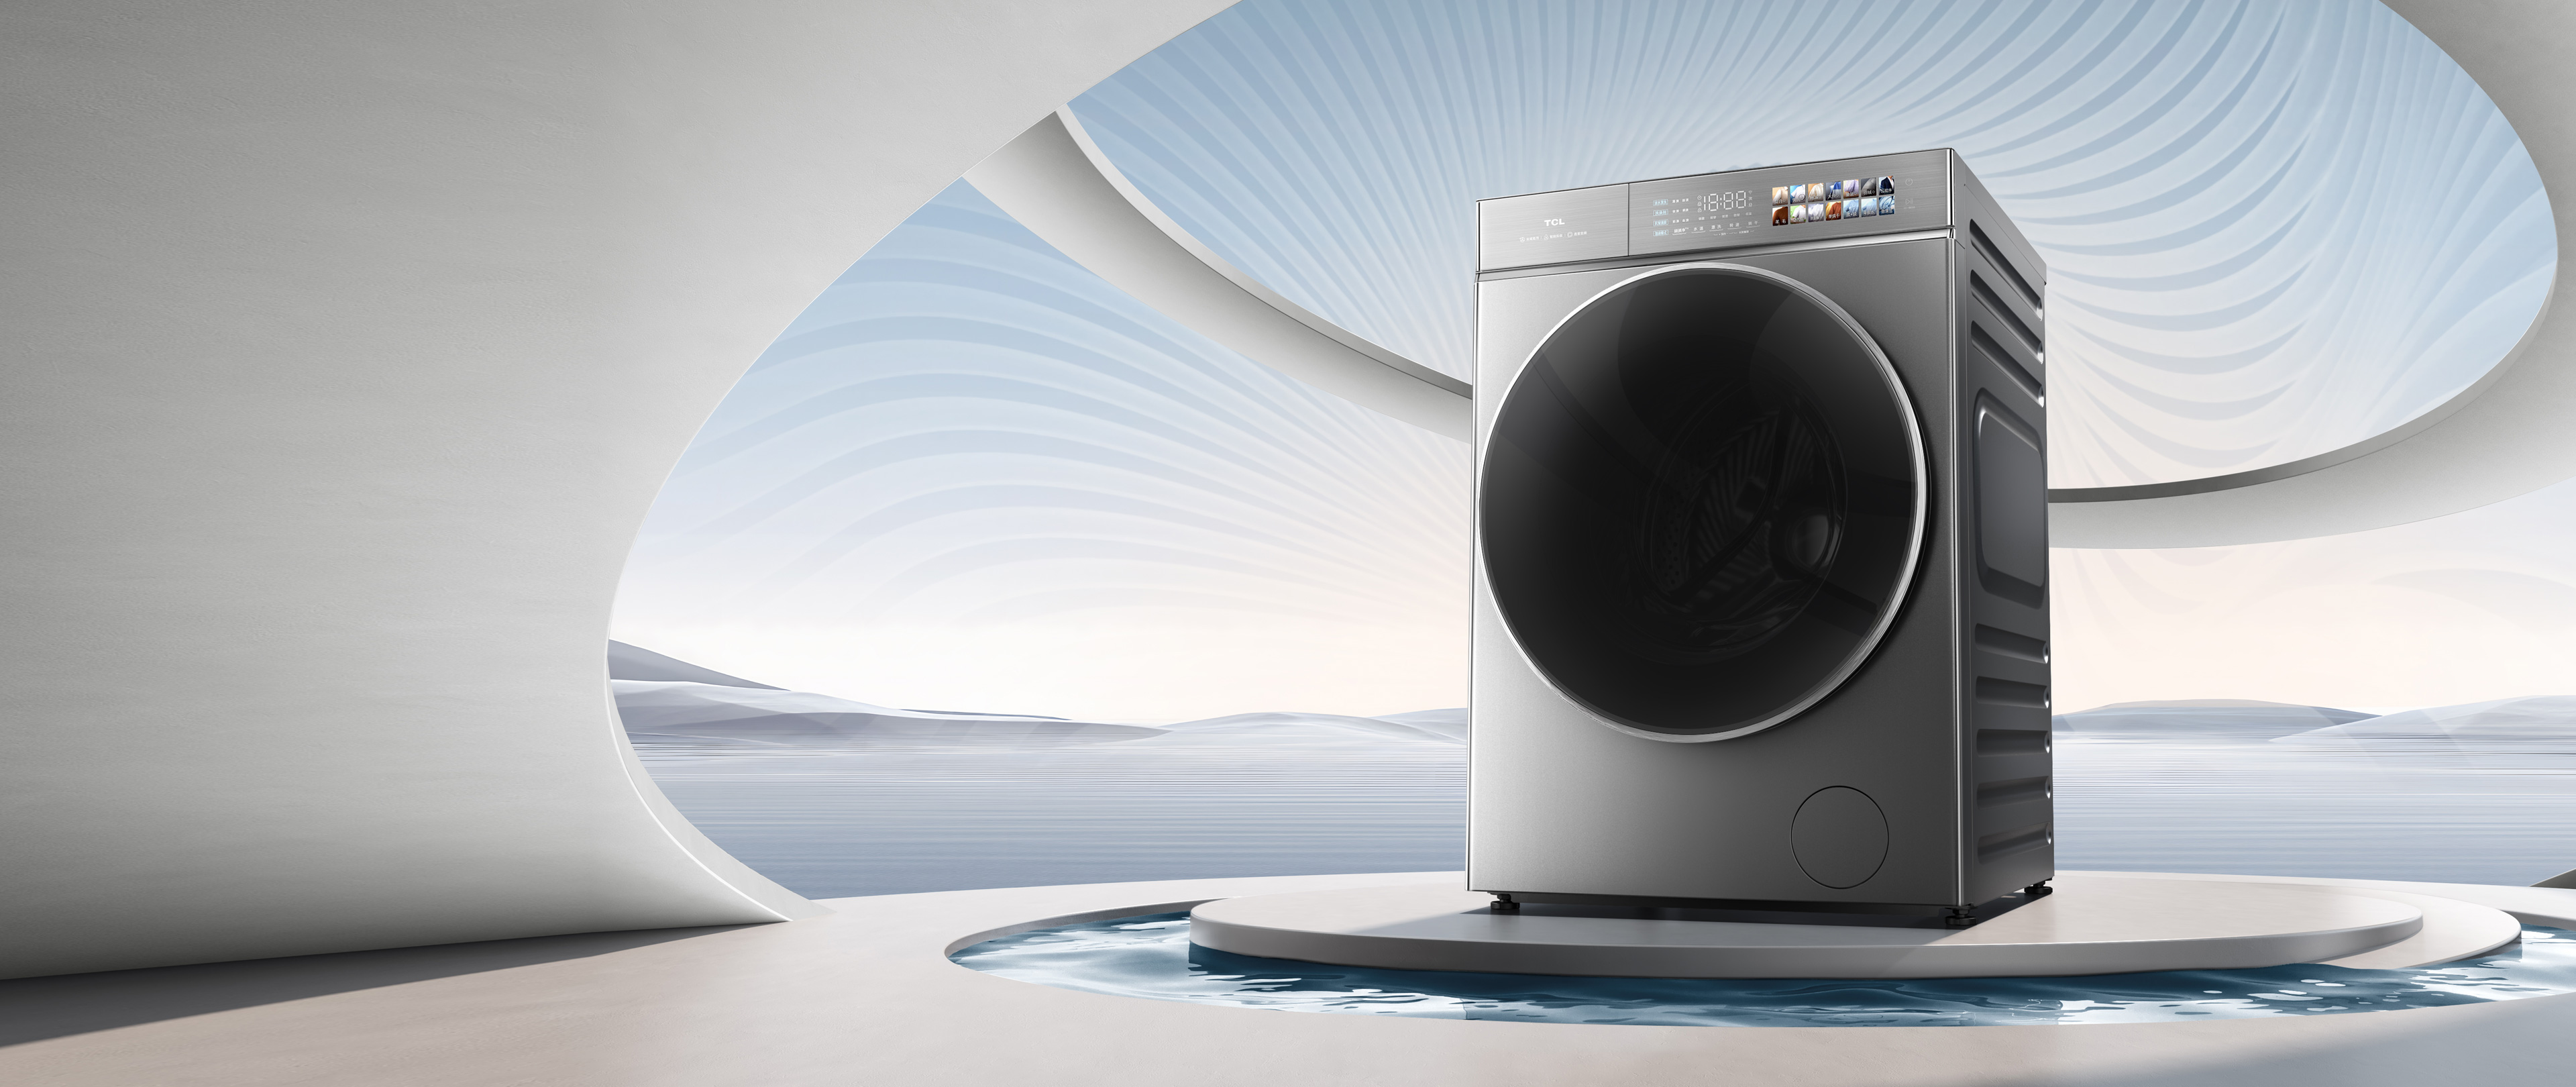 滾筒洗衣機 vs. 波輪洗衣機<br>如何選擇更適合你的洗衣機